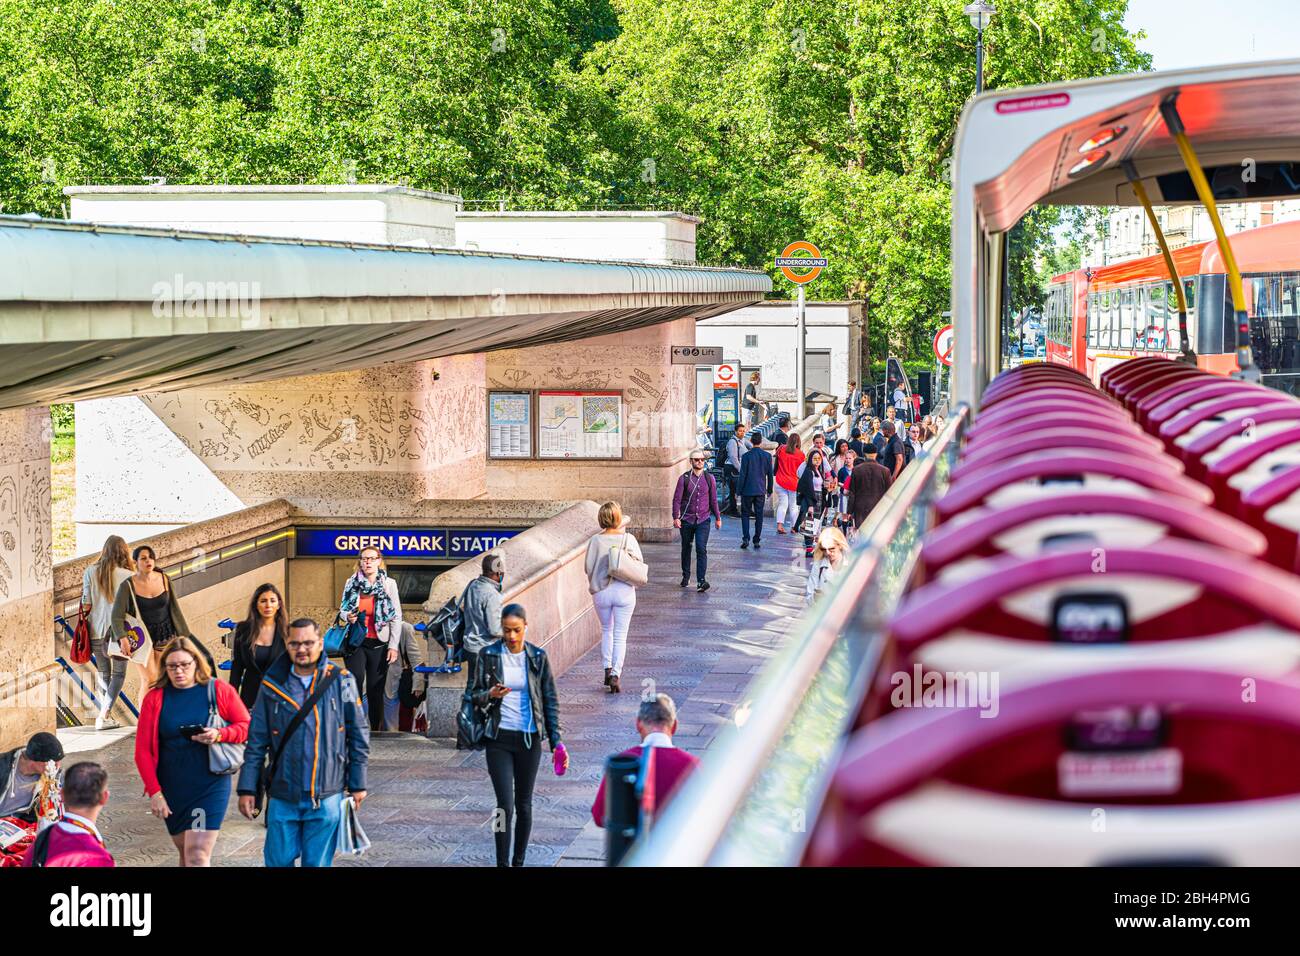 Londres, Royaume-Uni - 22 juin 2018 : grand autobus à impériale au-dessus du point de vue à angle élevé avec visite guidée et les touristes marchant par la gare de parc vert Banque D'Images